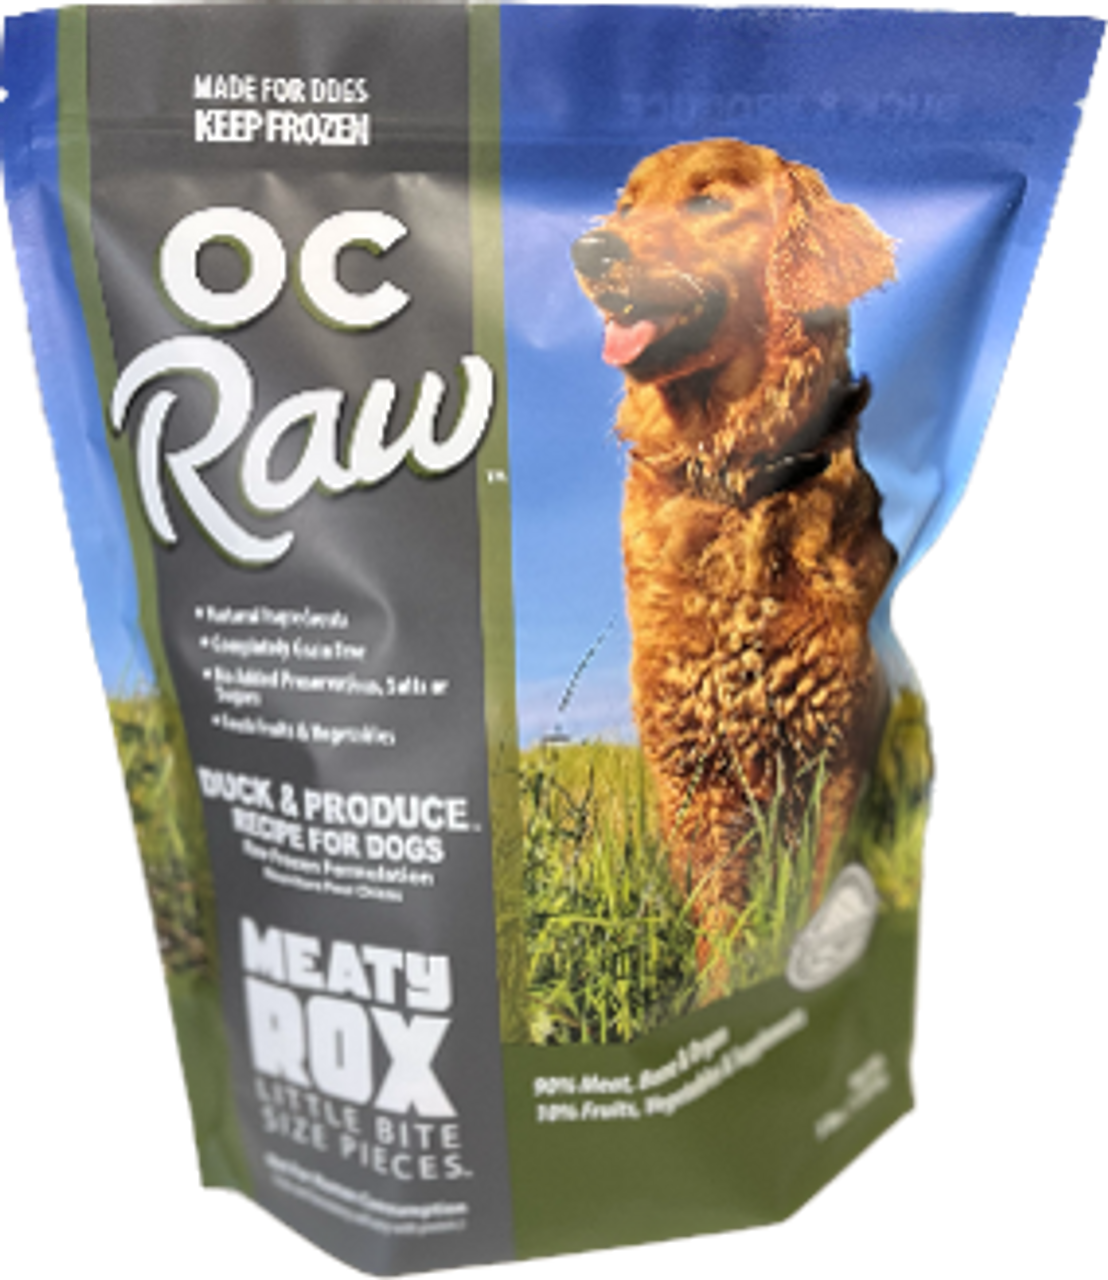 3lb OC Raw Duck & Produce MEATY ROX - Health/First Aid